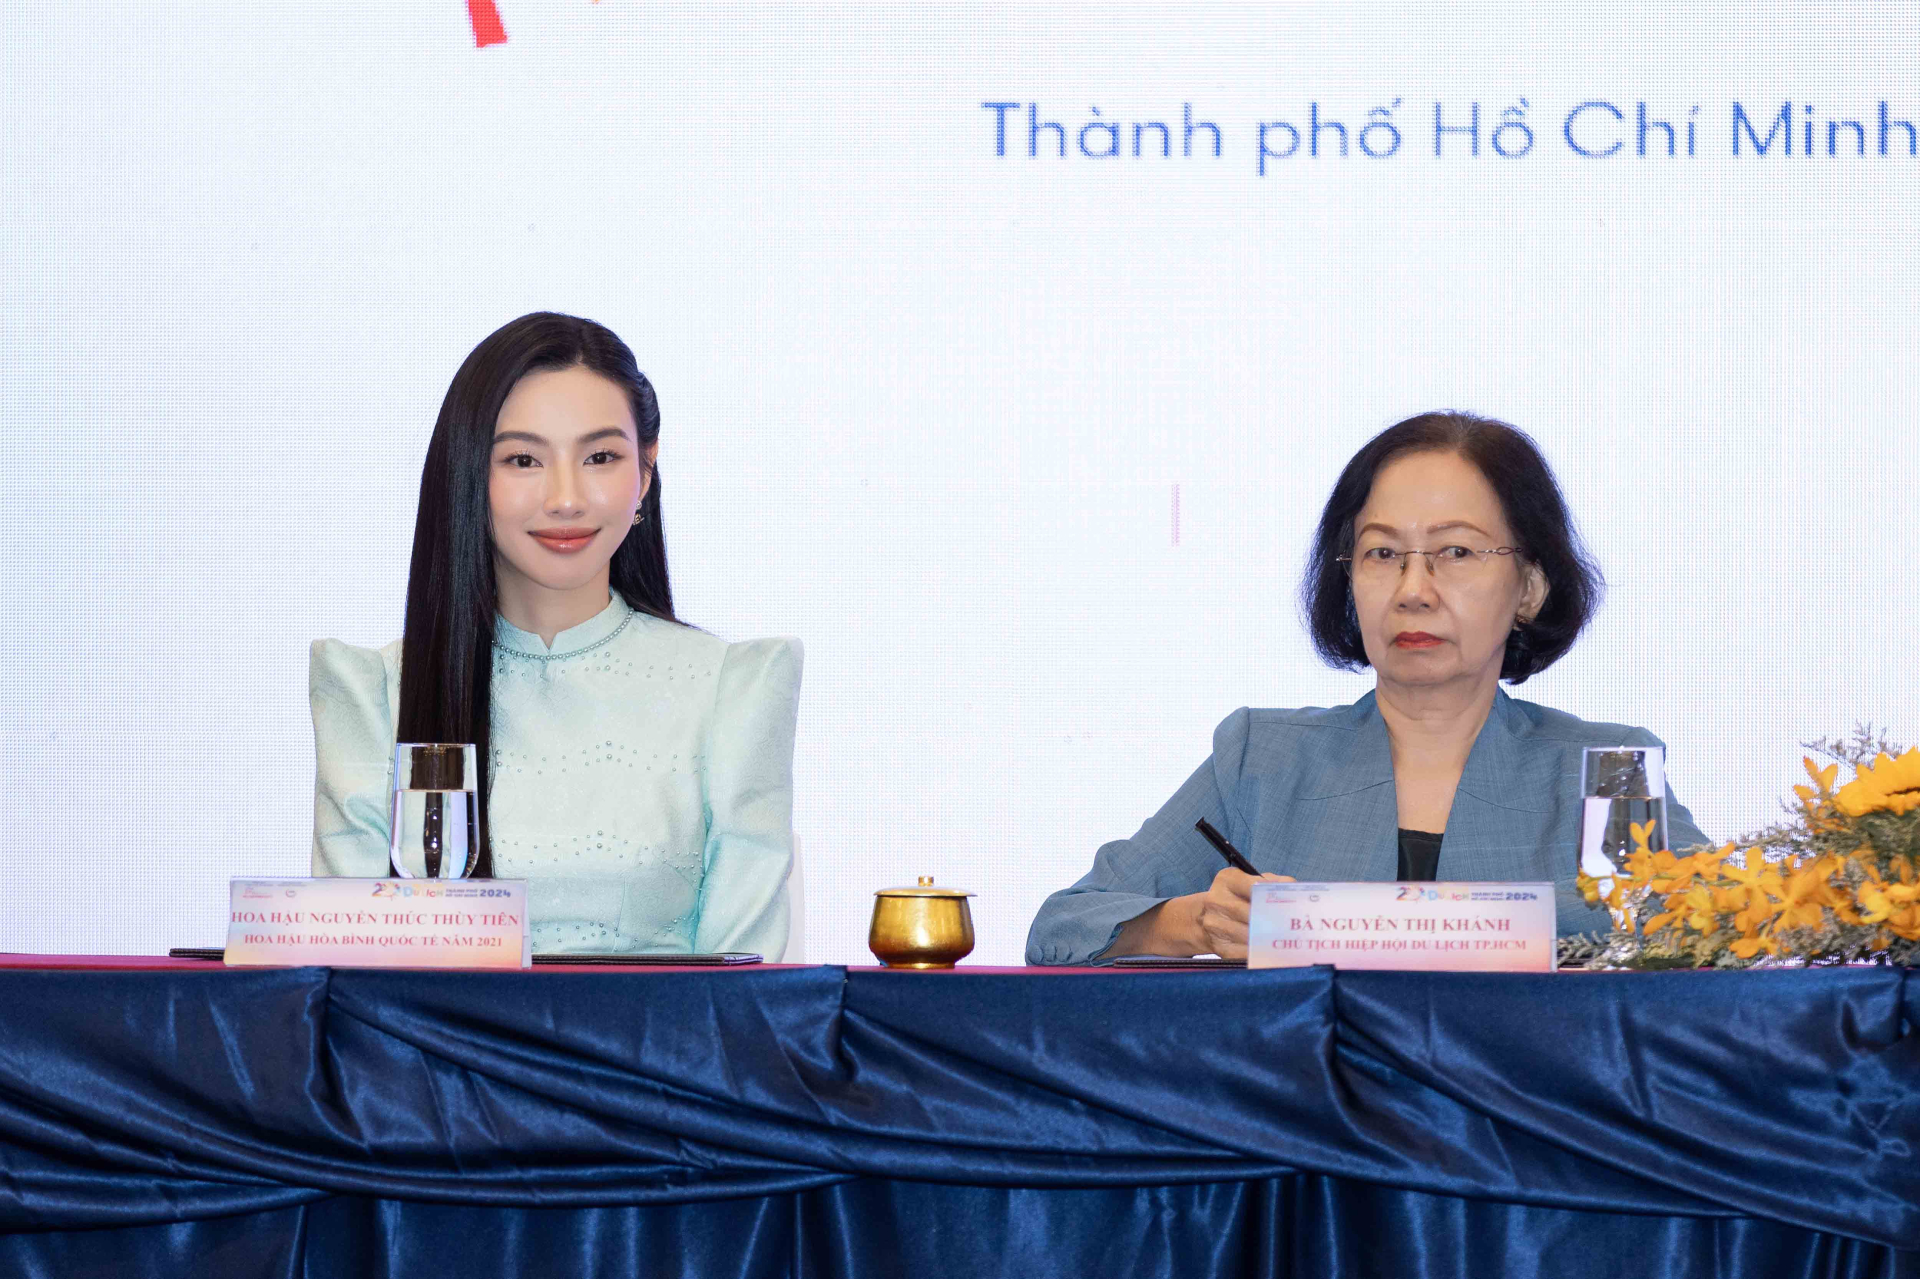 Thuỳ Tiên được chọn trở thành Đại sứ Du lịch Thành phố Hồ Chí Minh - ảnh 2